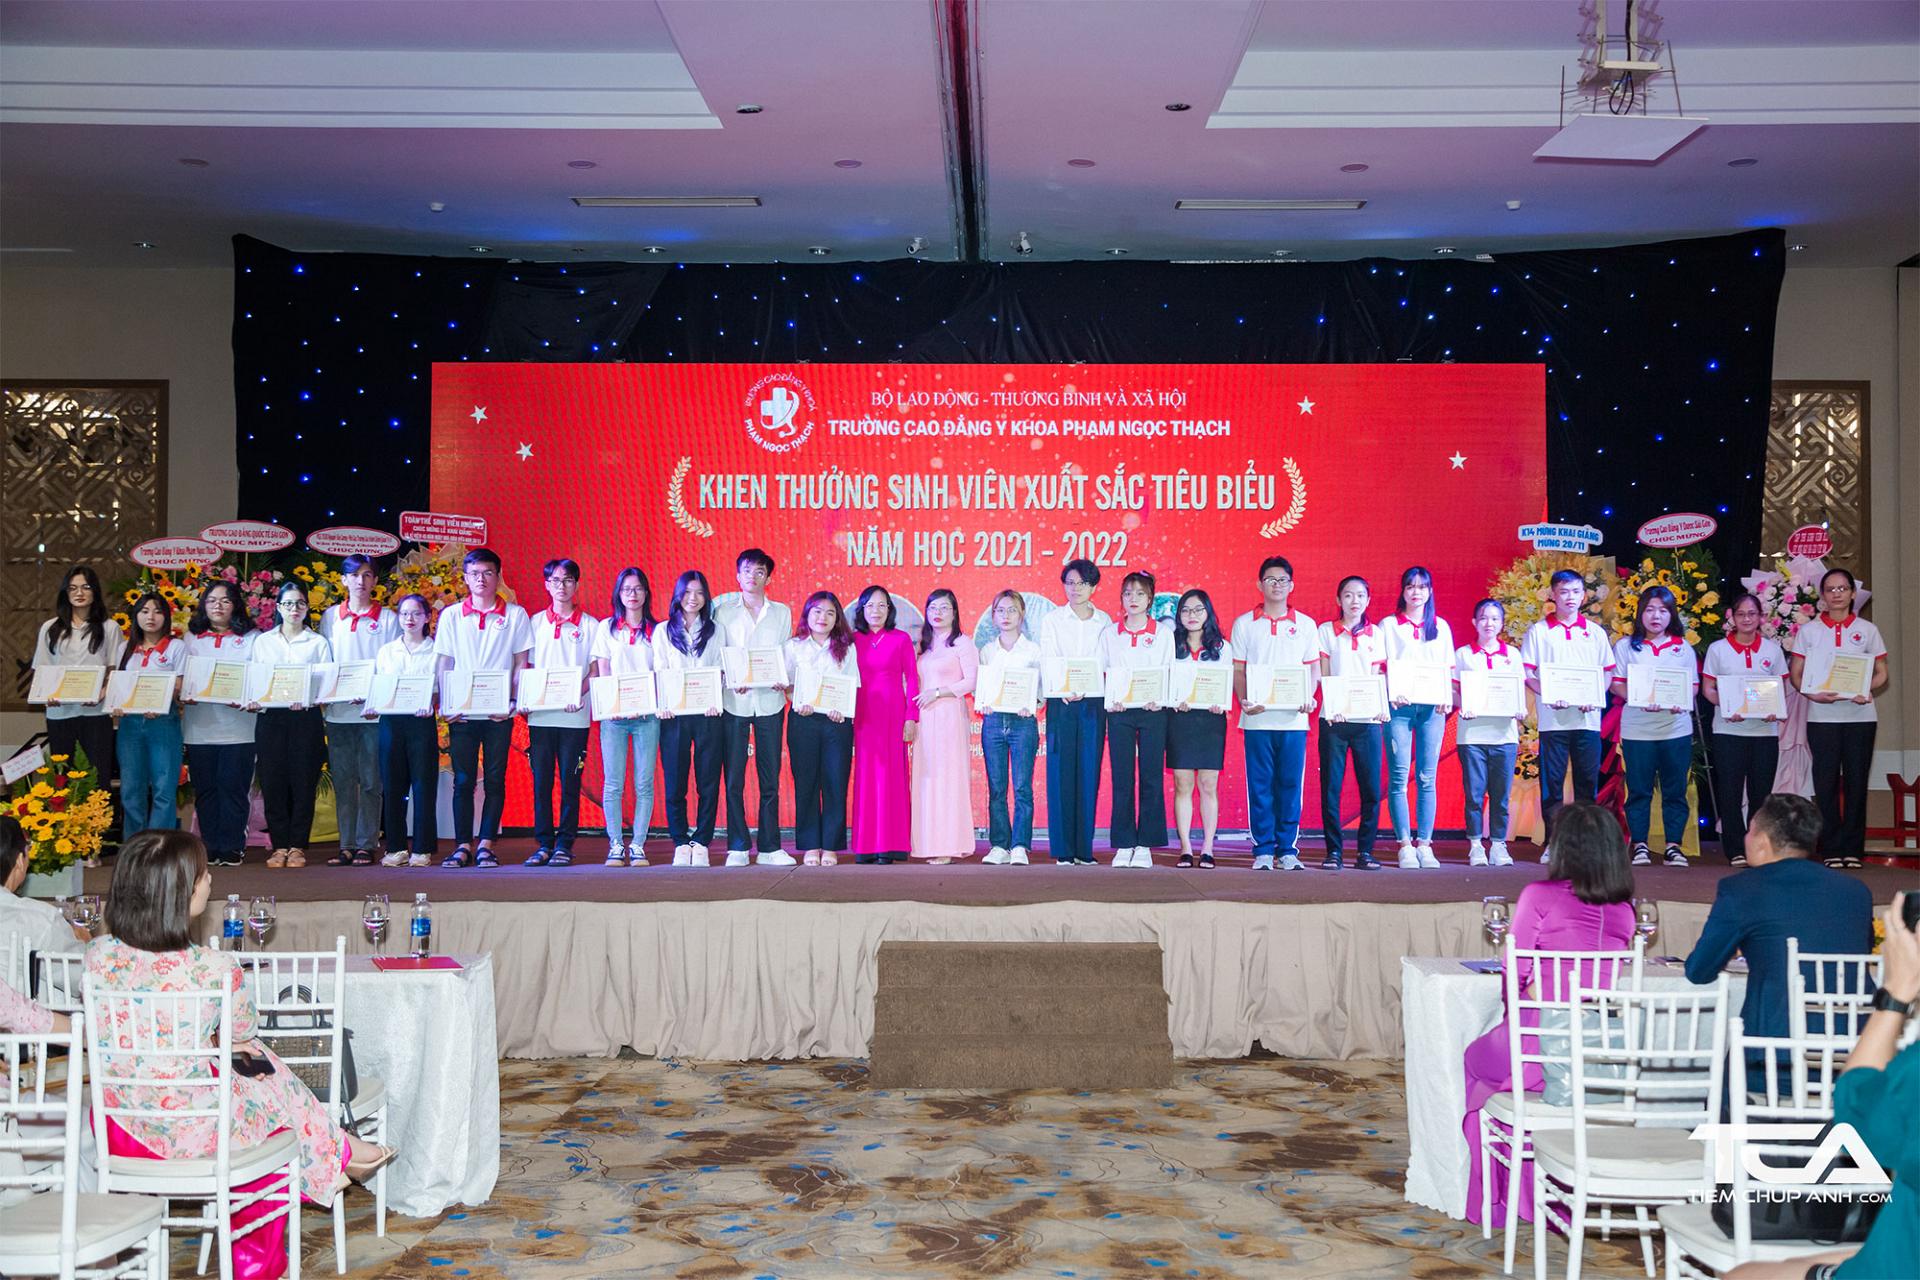 Trường Cao đẳng Y khoa Phạm Ngọc Thạch trao bằng khen thưởng sinh viên xuất sắc tiêu biểu